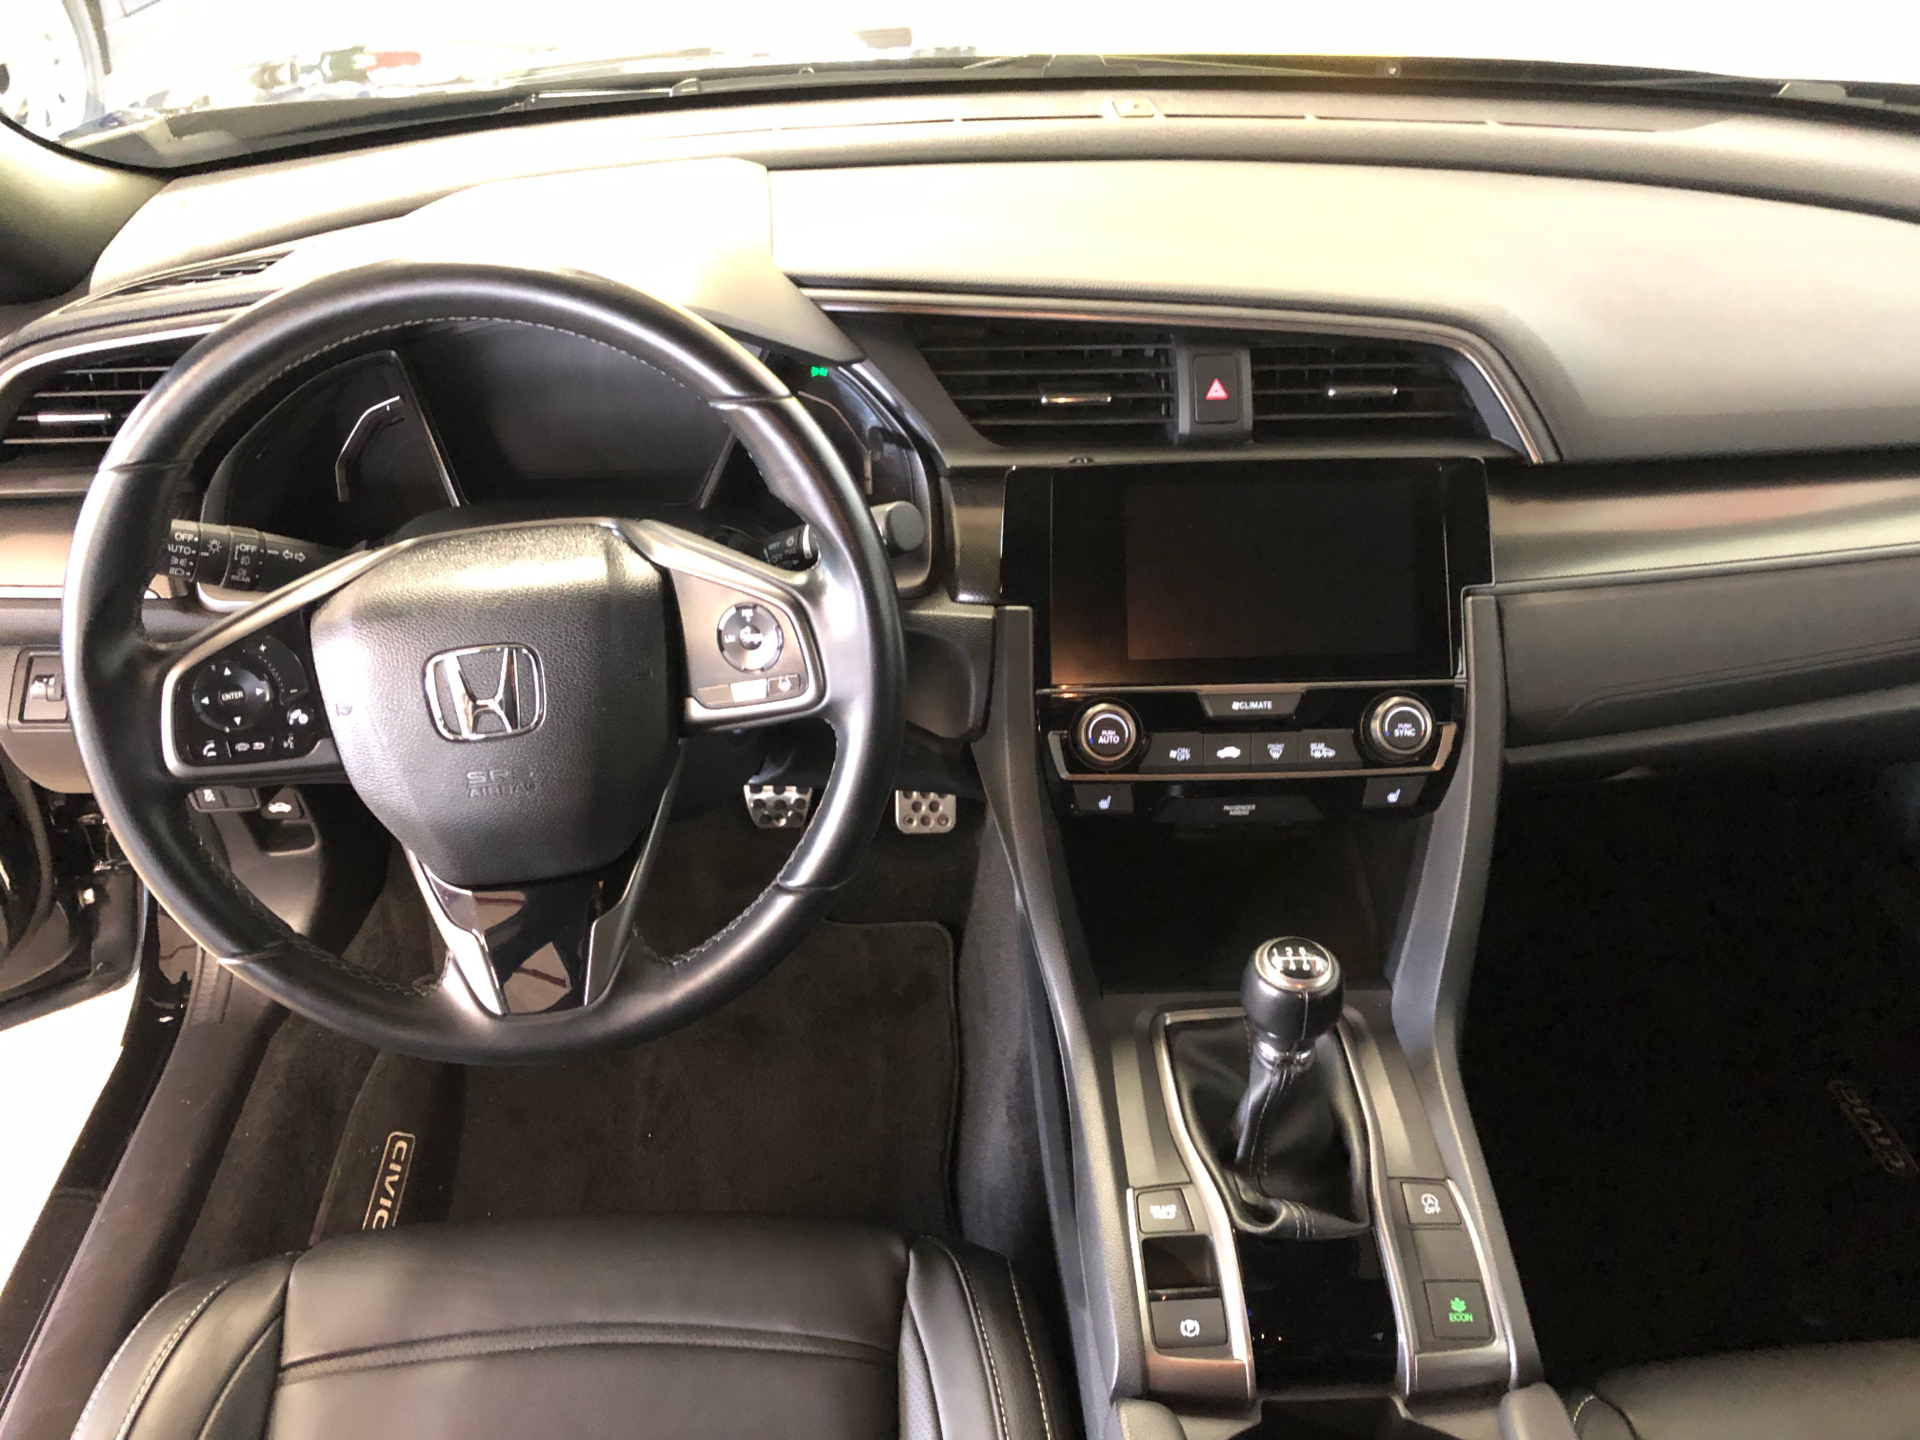 Billede af Honda Civic 1000 VTEC Turbo Elegance Navi 126HK 5d 6g